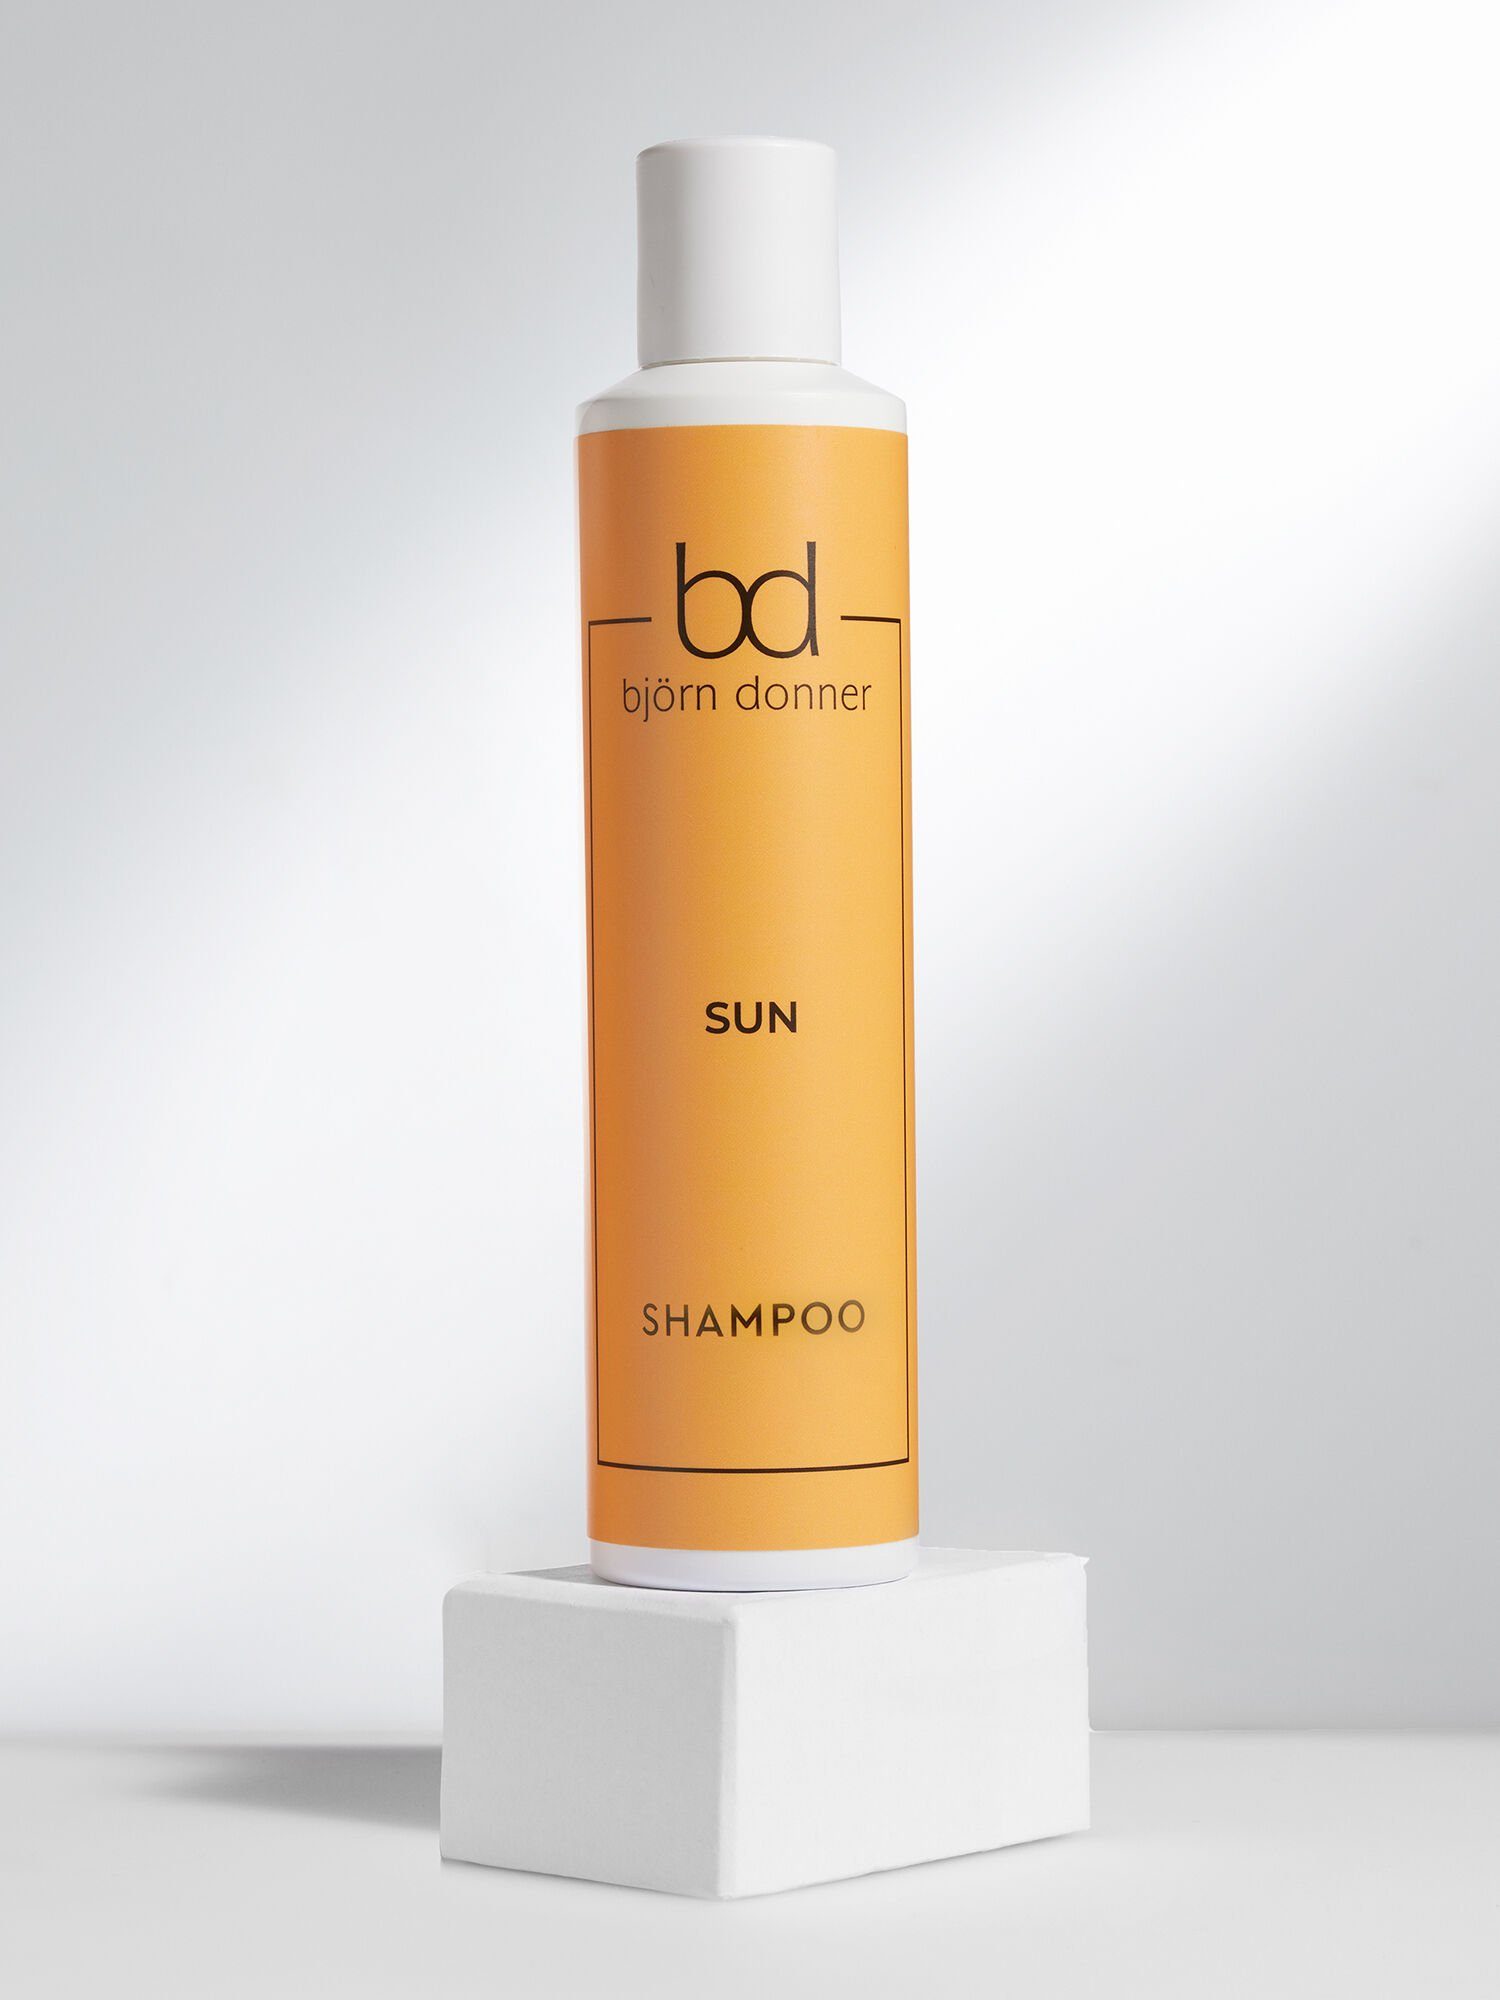 Björn Donner Haarshampoo "Sun", 200 ml, wohltuende Wirkstoffkombination aus Panthenol und Agave